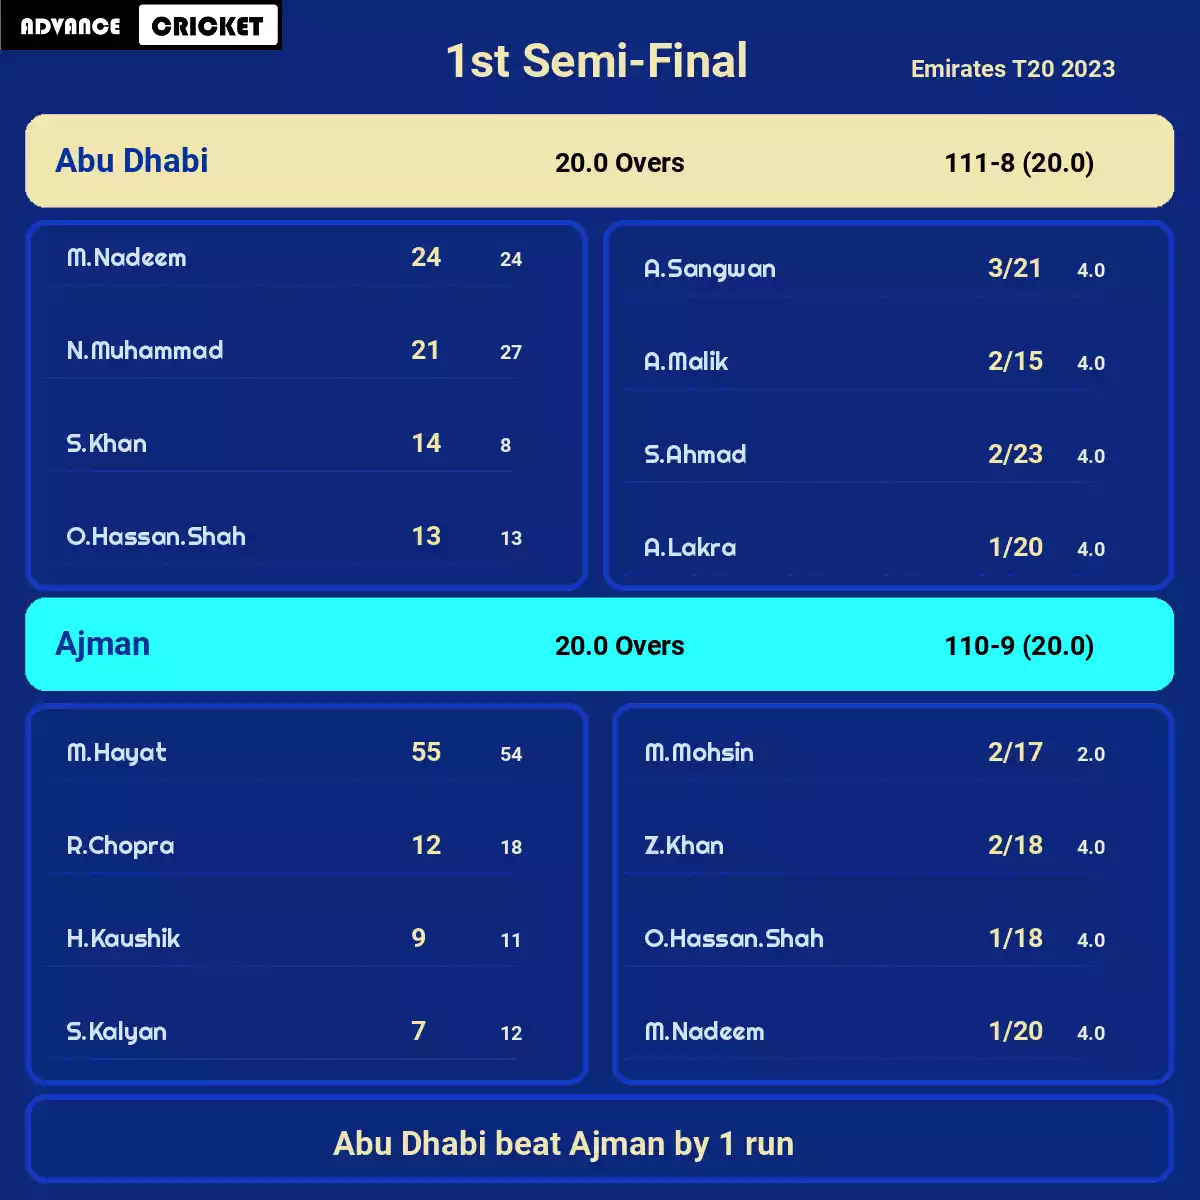 ABD vs AJM 1st Semi-Final Emirates T20 2023